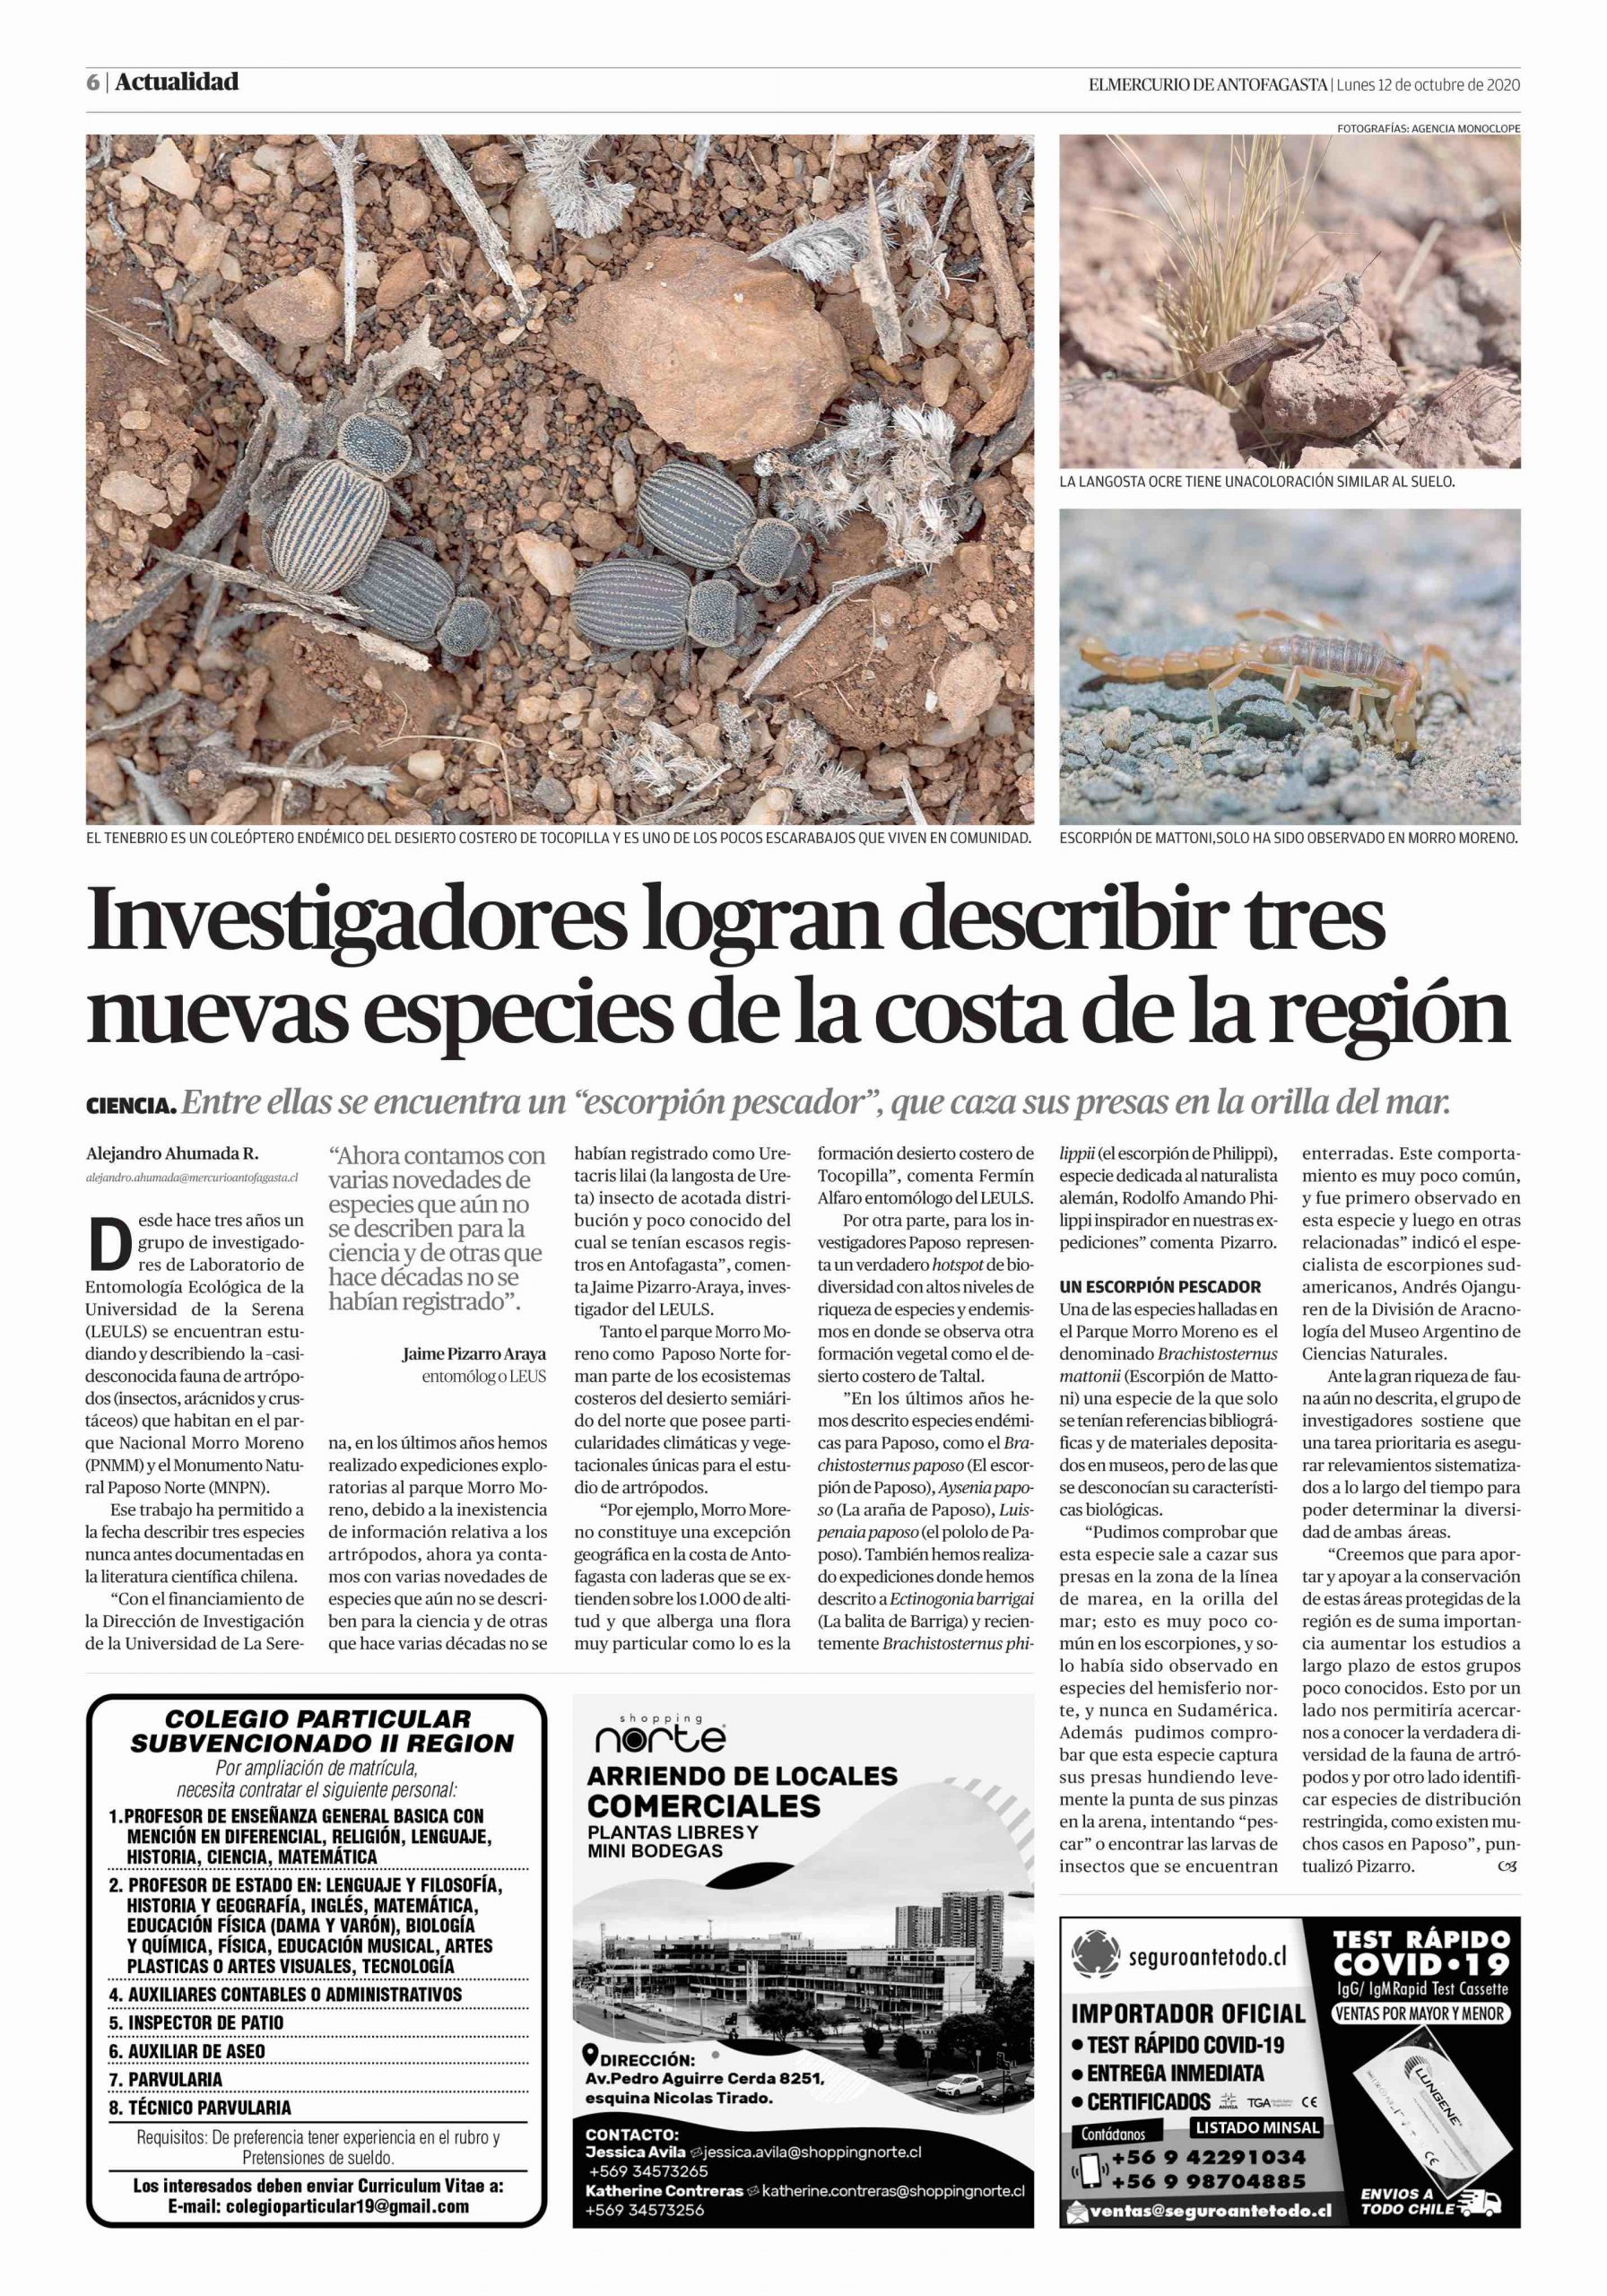 Trabajo en entomología ULS es portada de El Mercurio de Antofagasta